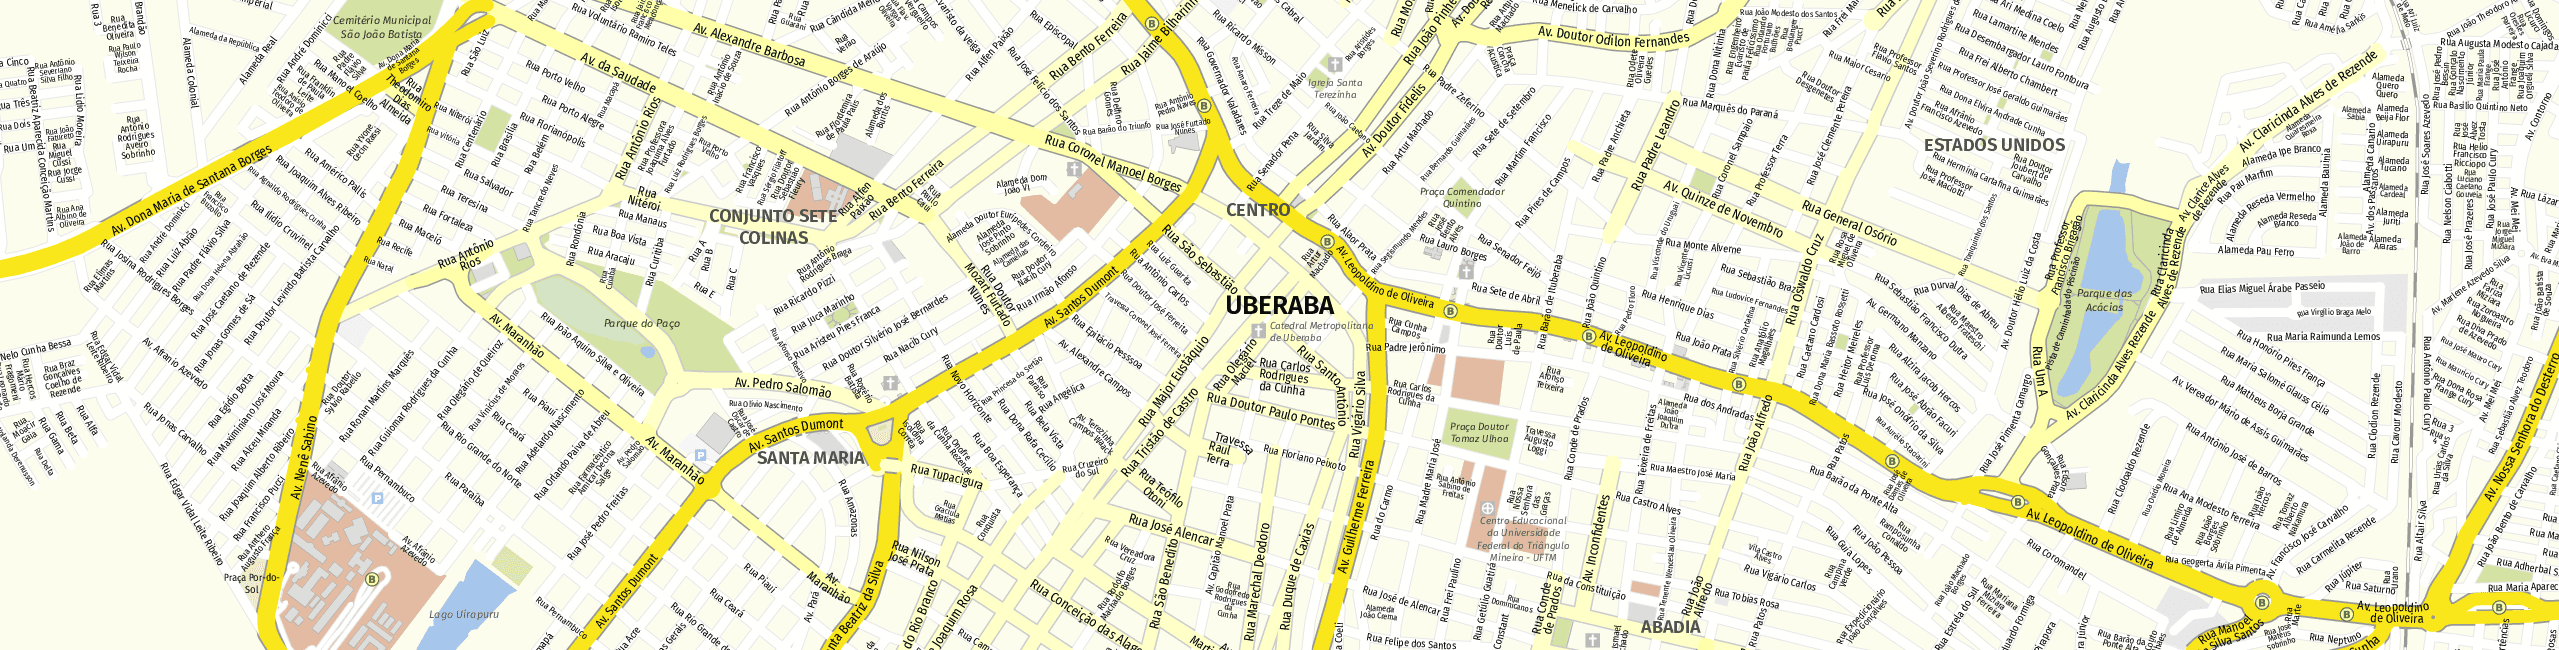 Stadtplan Uberaba zum Downloaden.